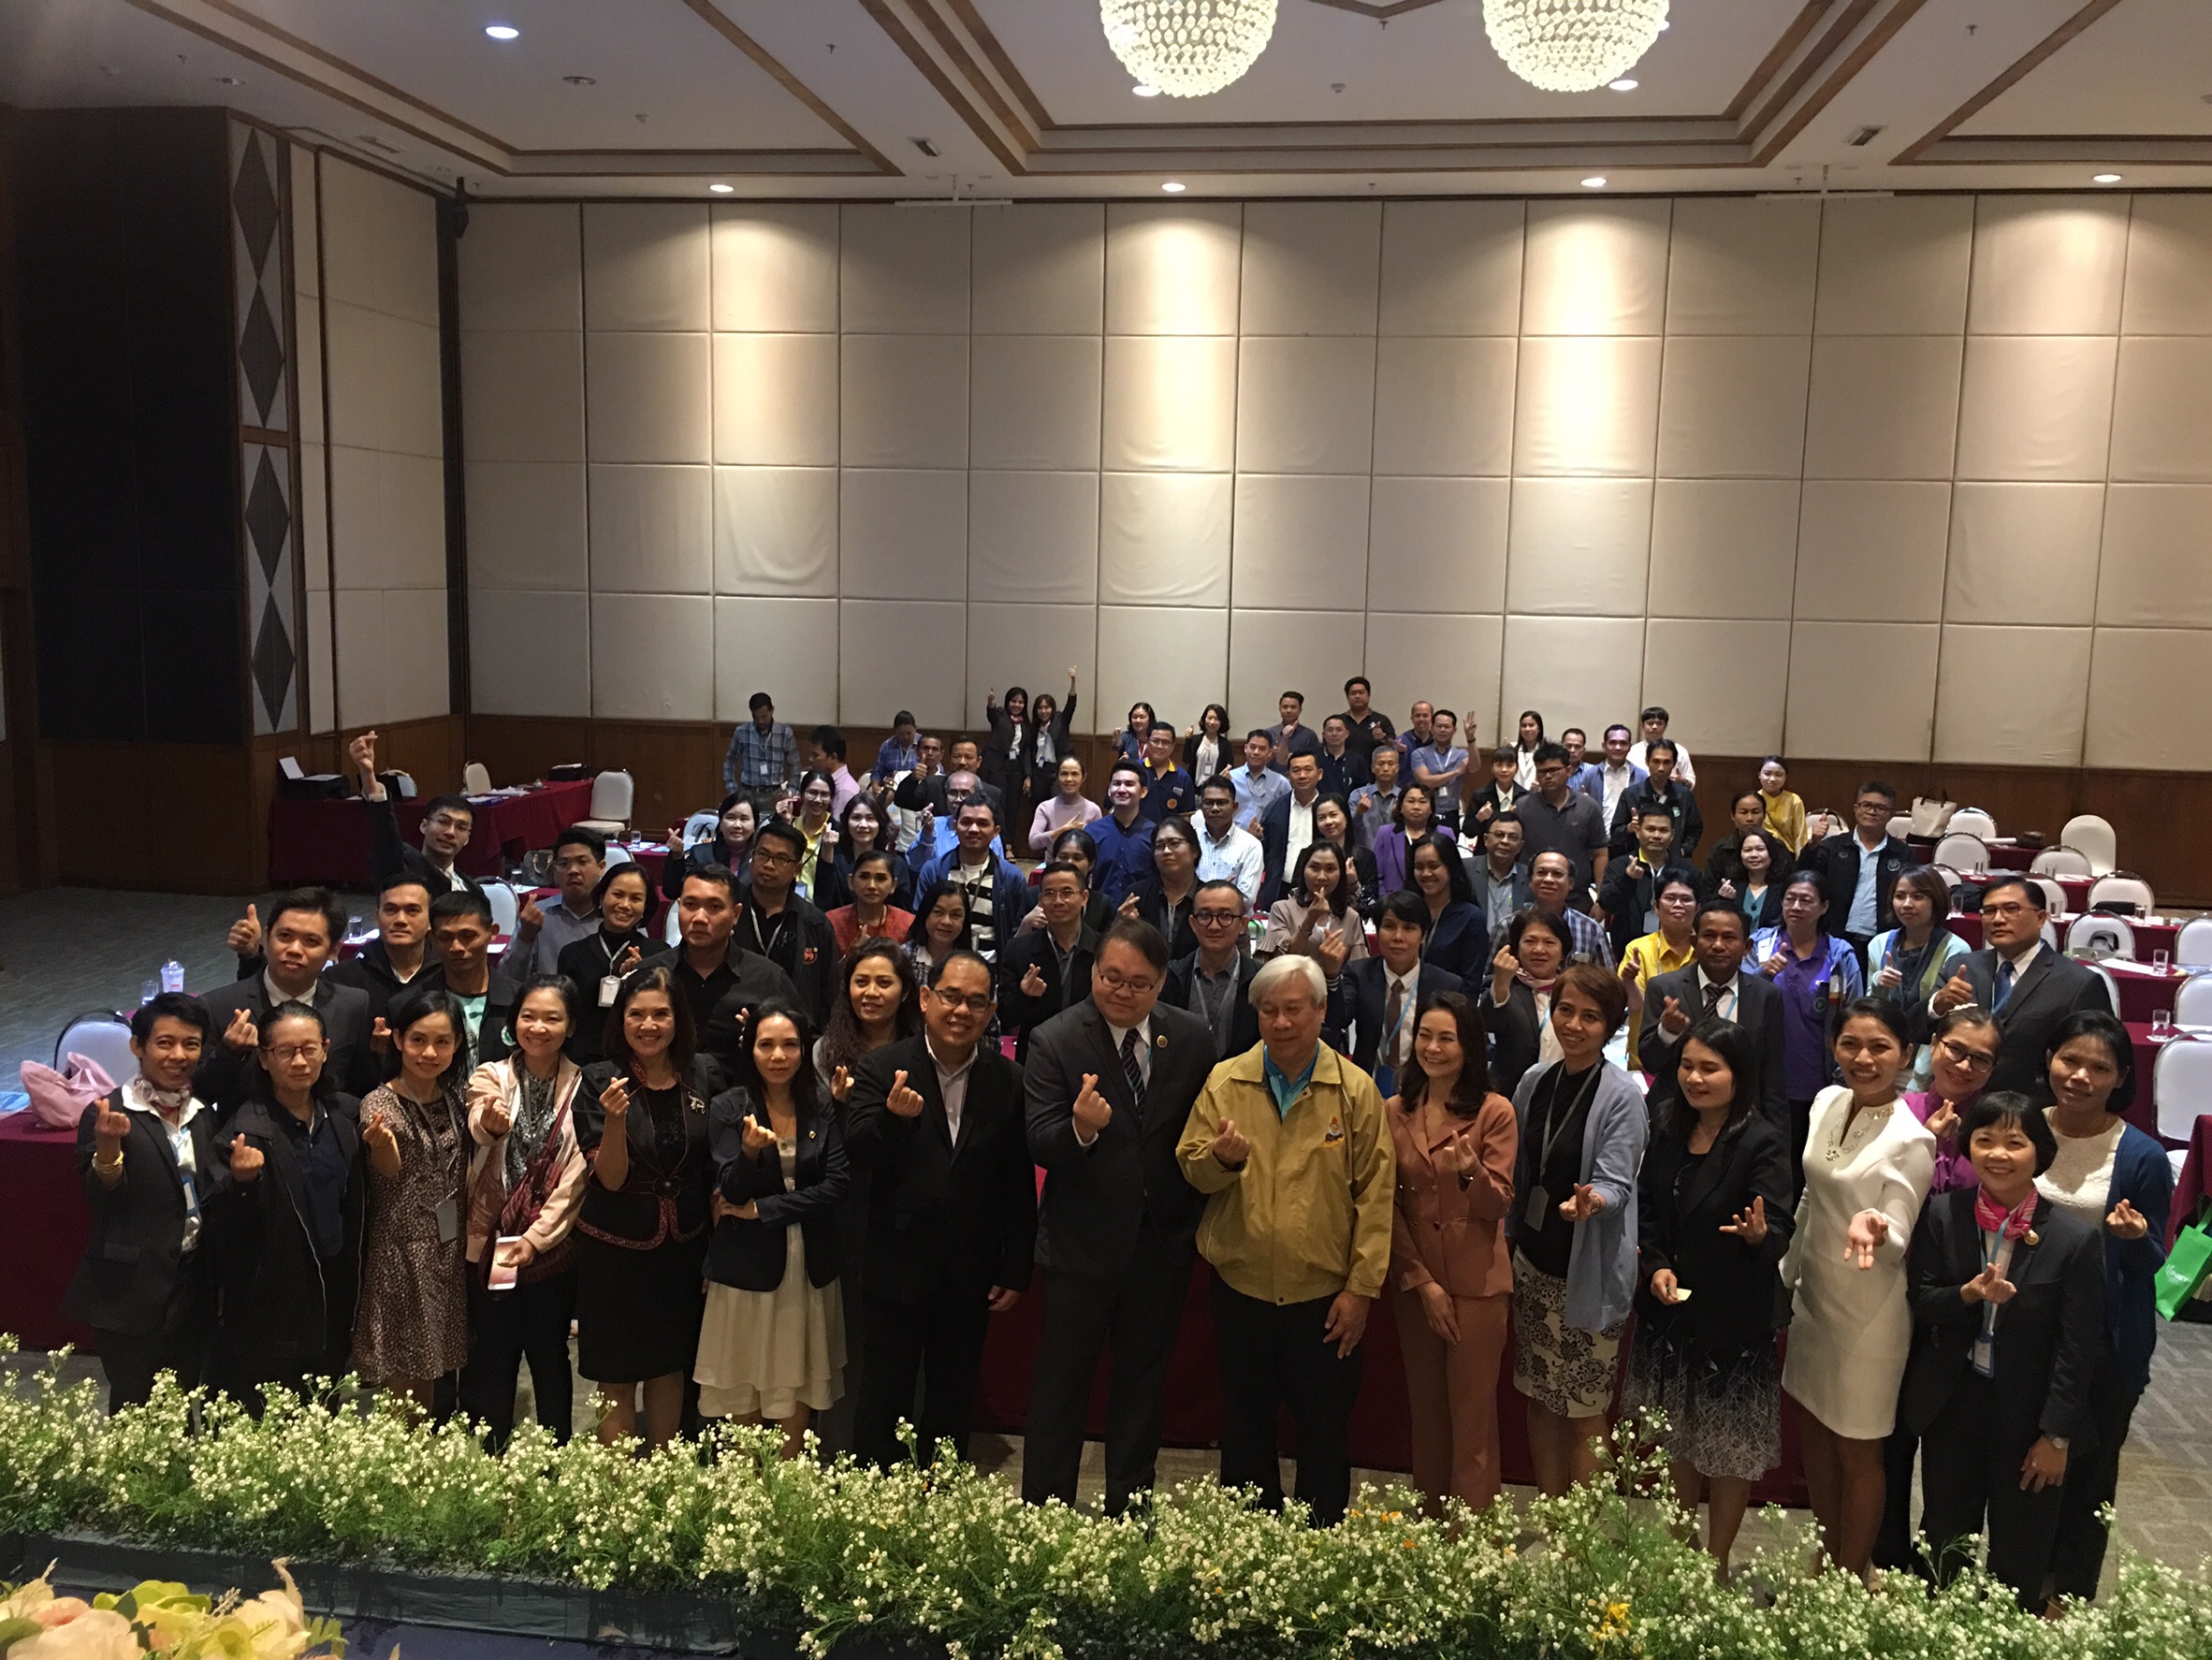 ประชุมวิชาการร่วมกับรังสีการแพทย์แห่งประเทศไทย ครั้งที่17 27-29 พ.ย. - พร้อมเข้าเยี่ยมและให้กำลังใจหน่วยงานรังสีวิทยาในพื้นที่จังหวัดอุบลราชธานีระหว่างวันที่ 25-26 พฤศจิกายน 2562 16